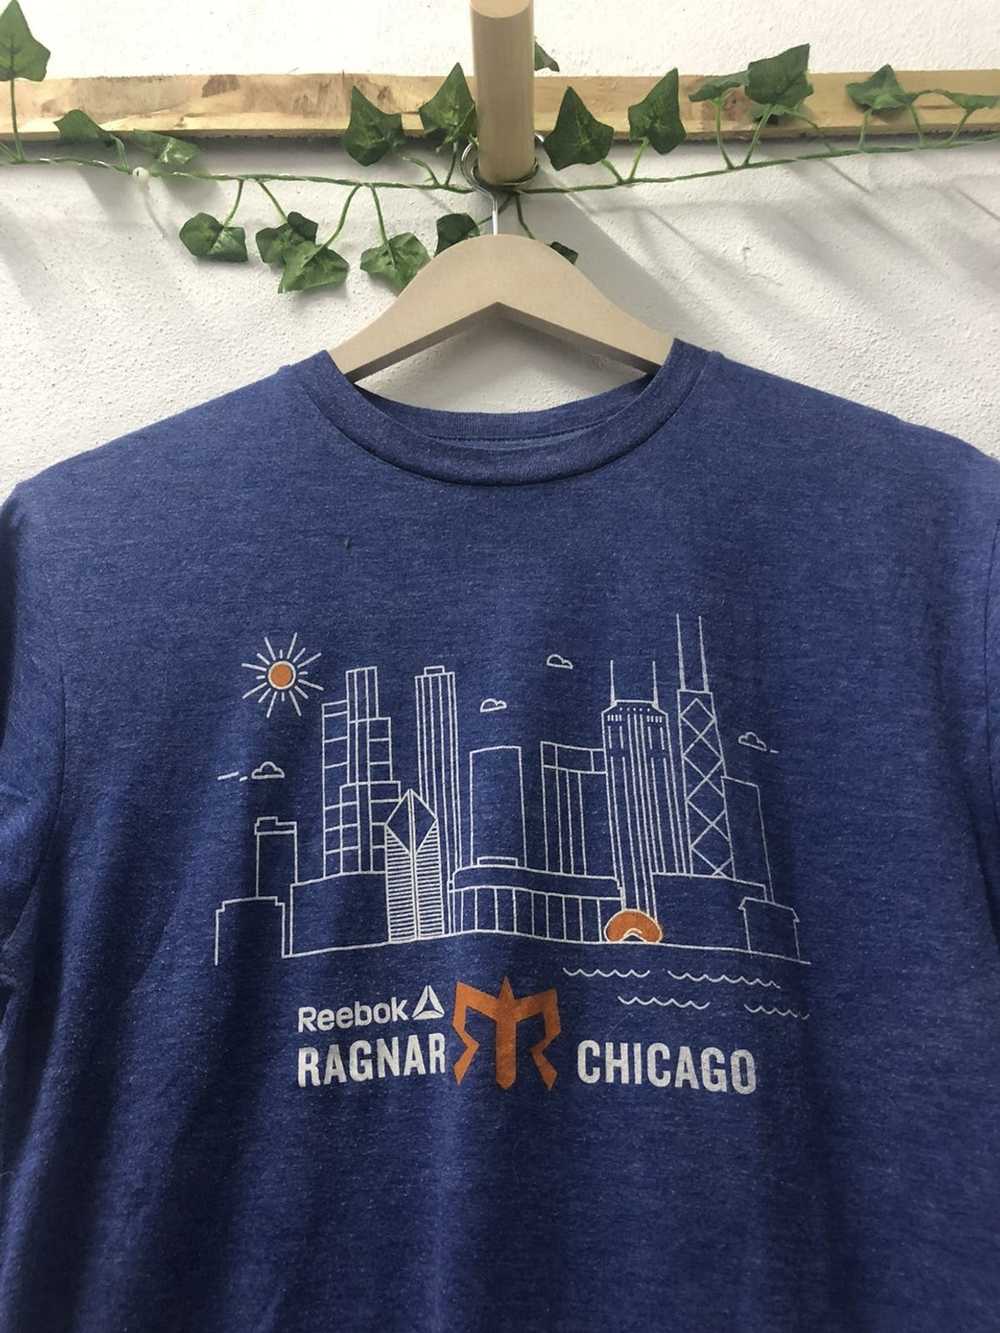 Reebok Reebok Ragnar Chicago Town - image 2